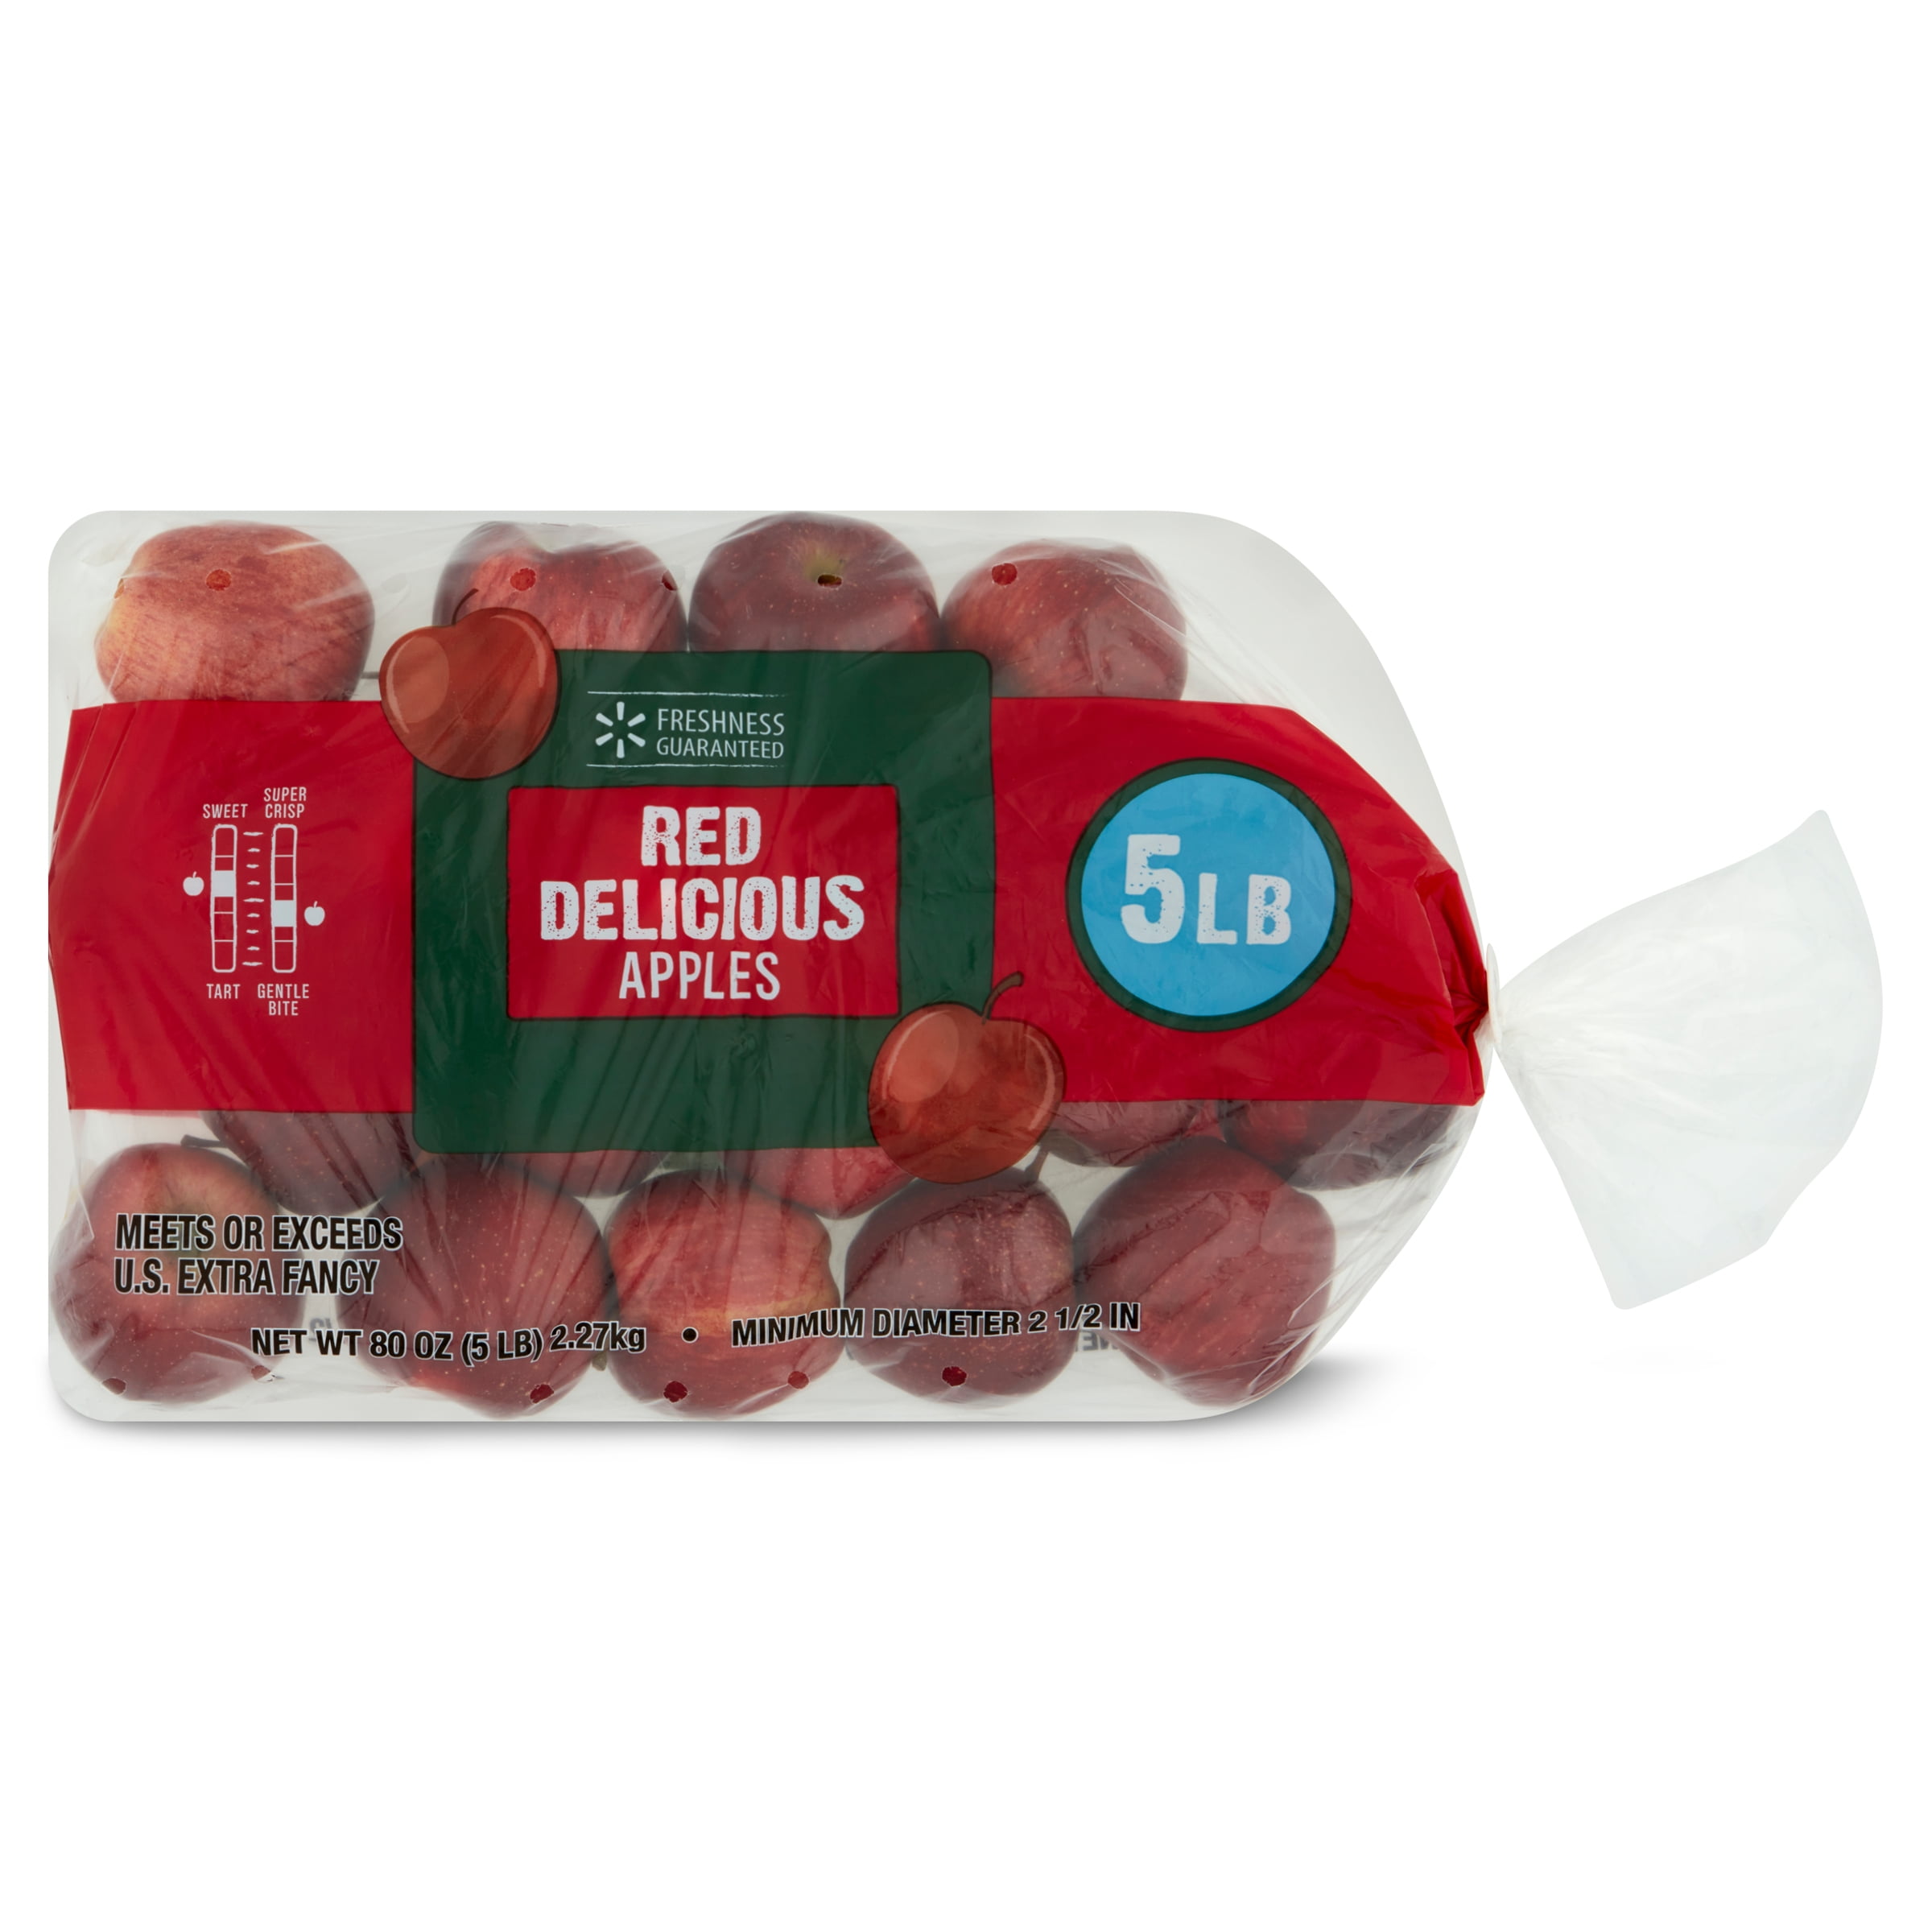 Fresh Gala Apples, 3 lb Bag - Walmart.com